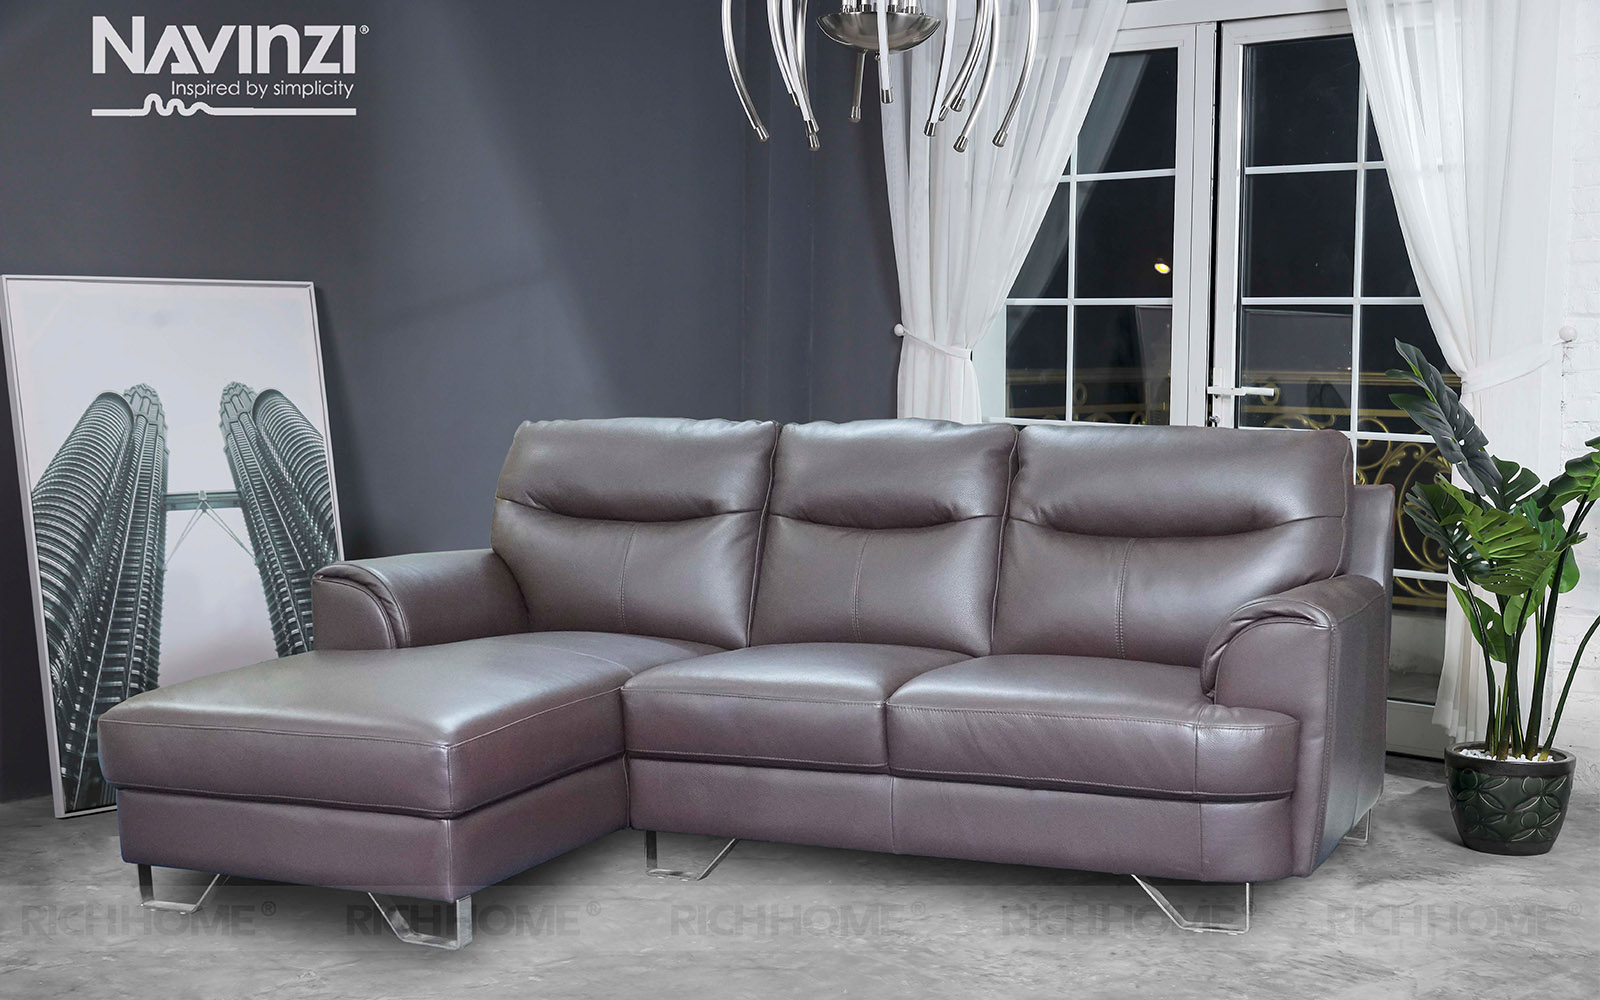 15 mẫu bàn ghế sofa phòng khách nhập khẩu đáng mua nhất - Ảnh 5